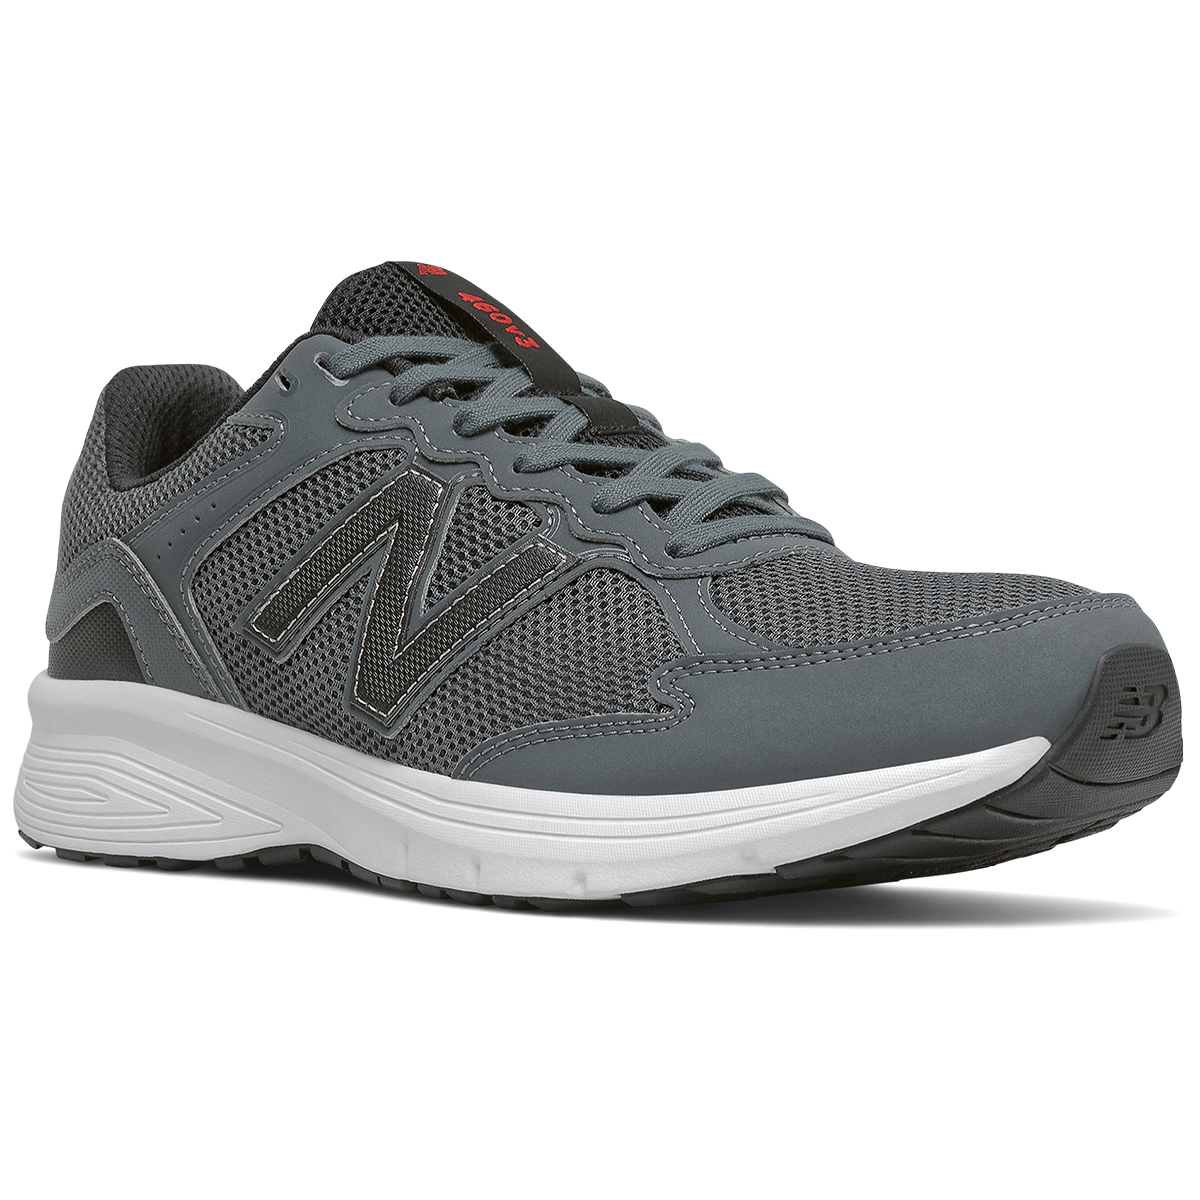 New Balance Men's 460V3 Running Shoes, Size 4E